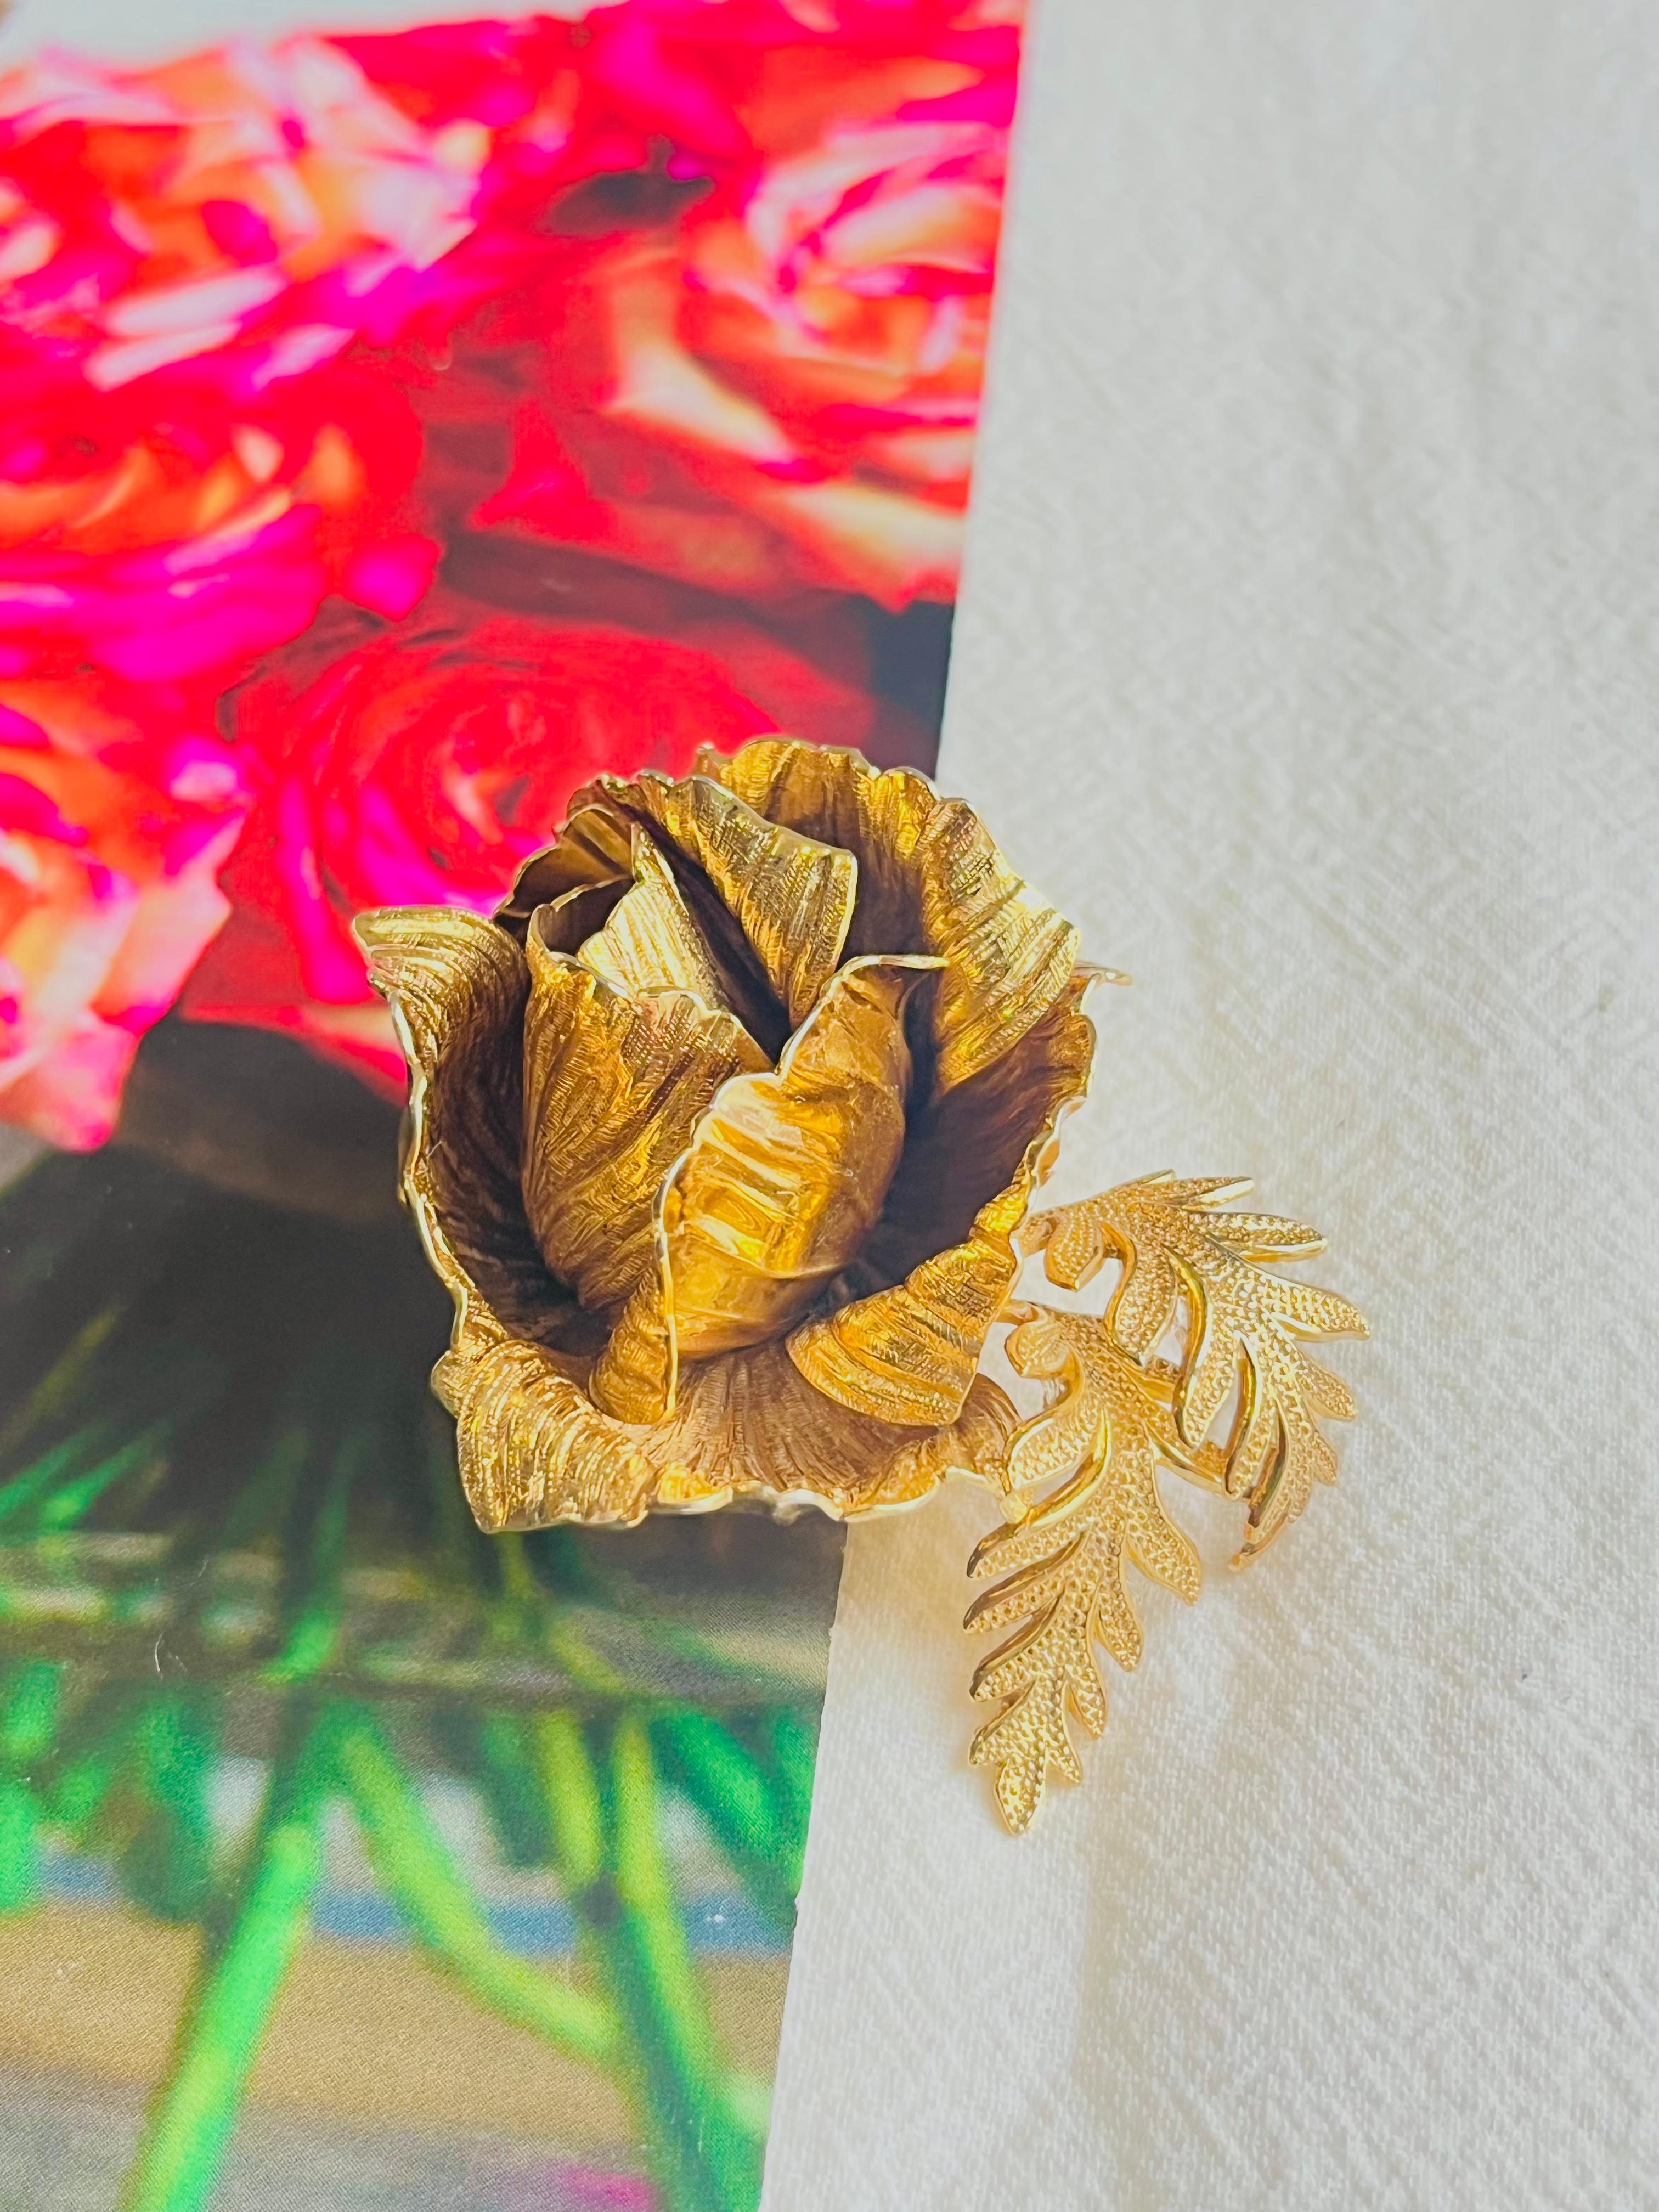 Christian Dior GROSSE 1961 Vintage Sculpted 3D Vivid Rose Blume Blatt Brosche, Gold-Ton

Sehr guter Zustand. Selten zu finden. 100% echt.

Ein Unikat. Diese stilisierte Brosche ist vergoldet.

Verschluss mit Sicherheitsnadel.

Größe: 6,0 cm x 4,5